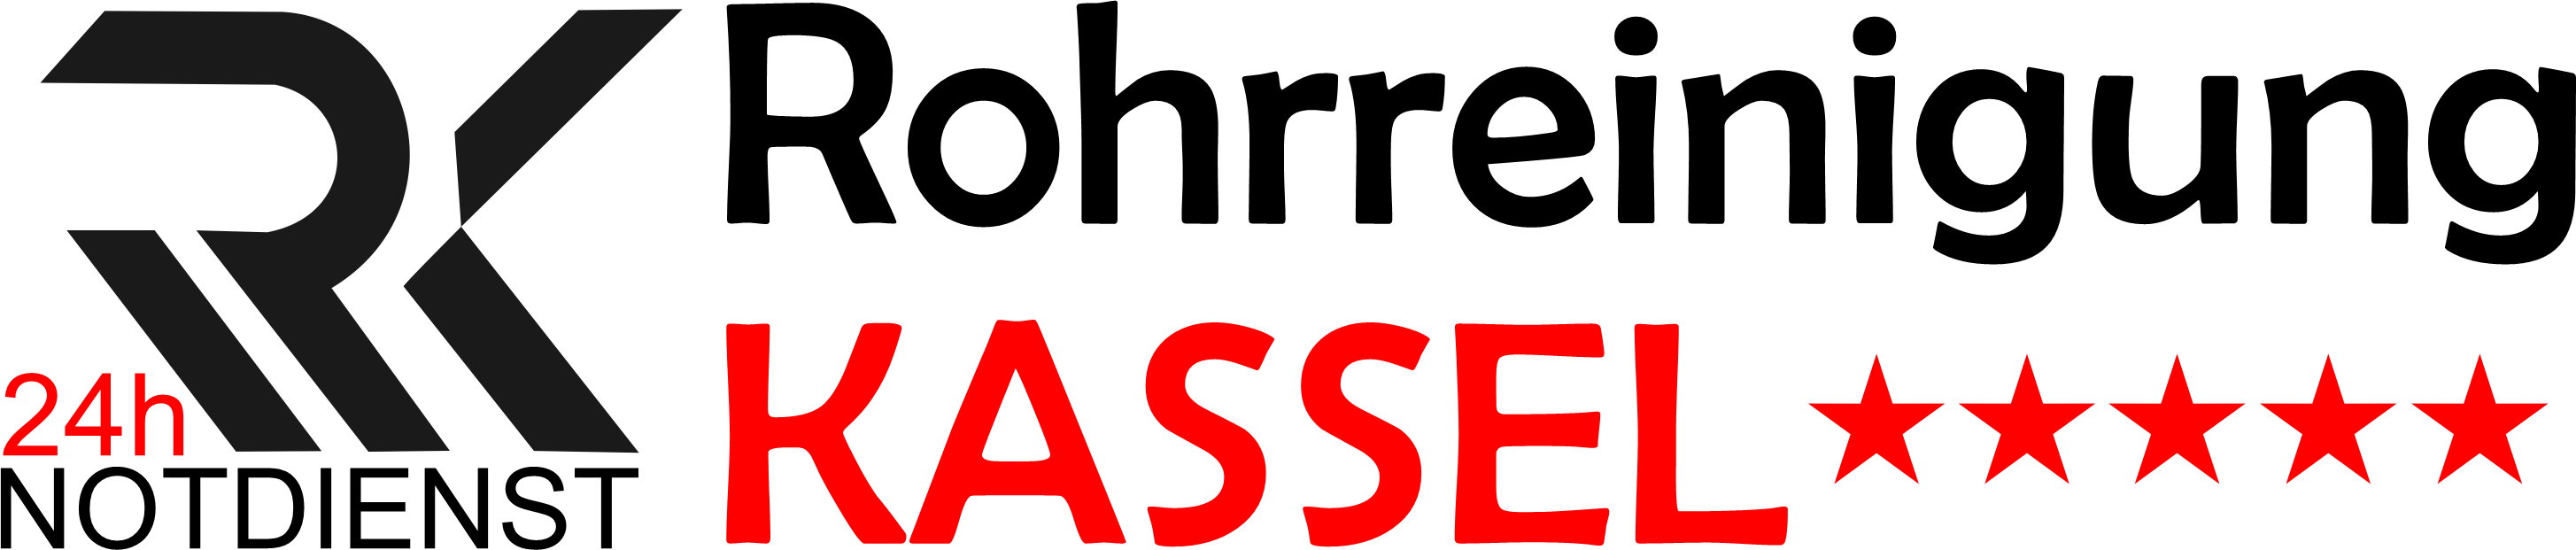 Rohrreinigung Kassel Logo